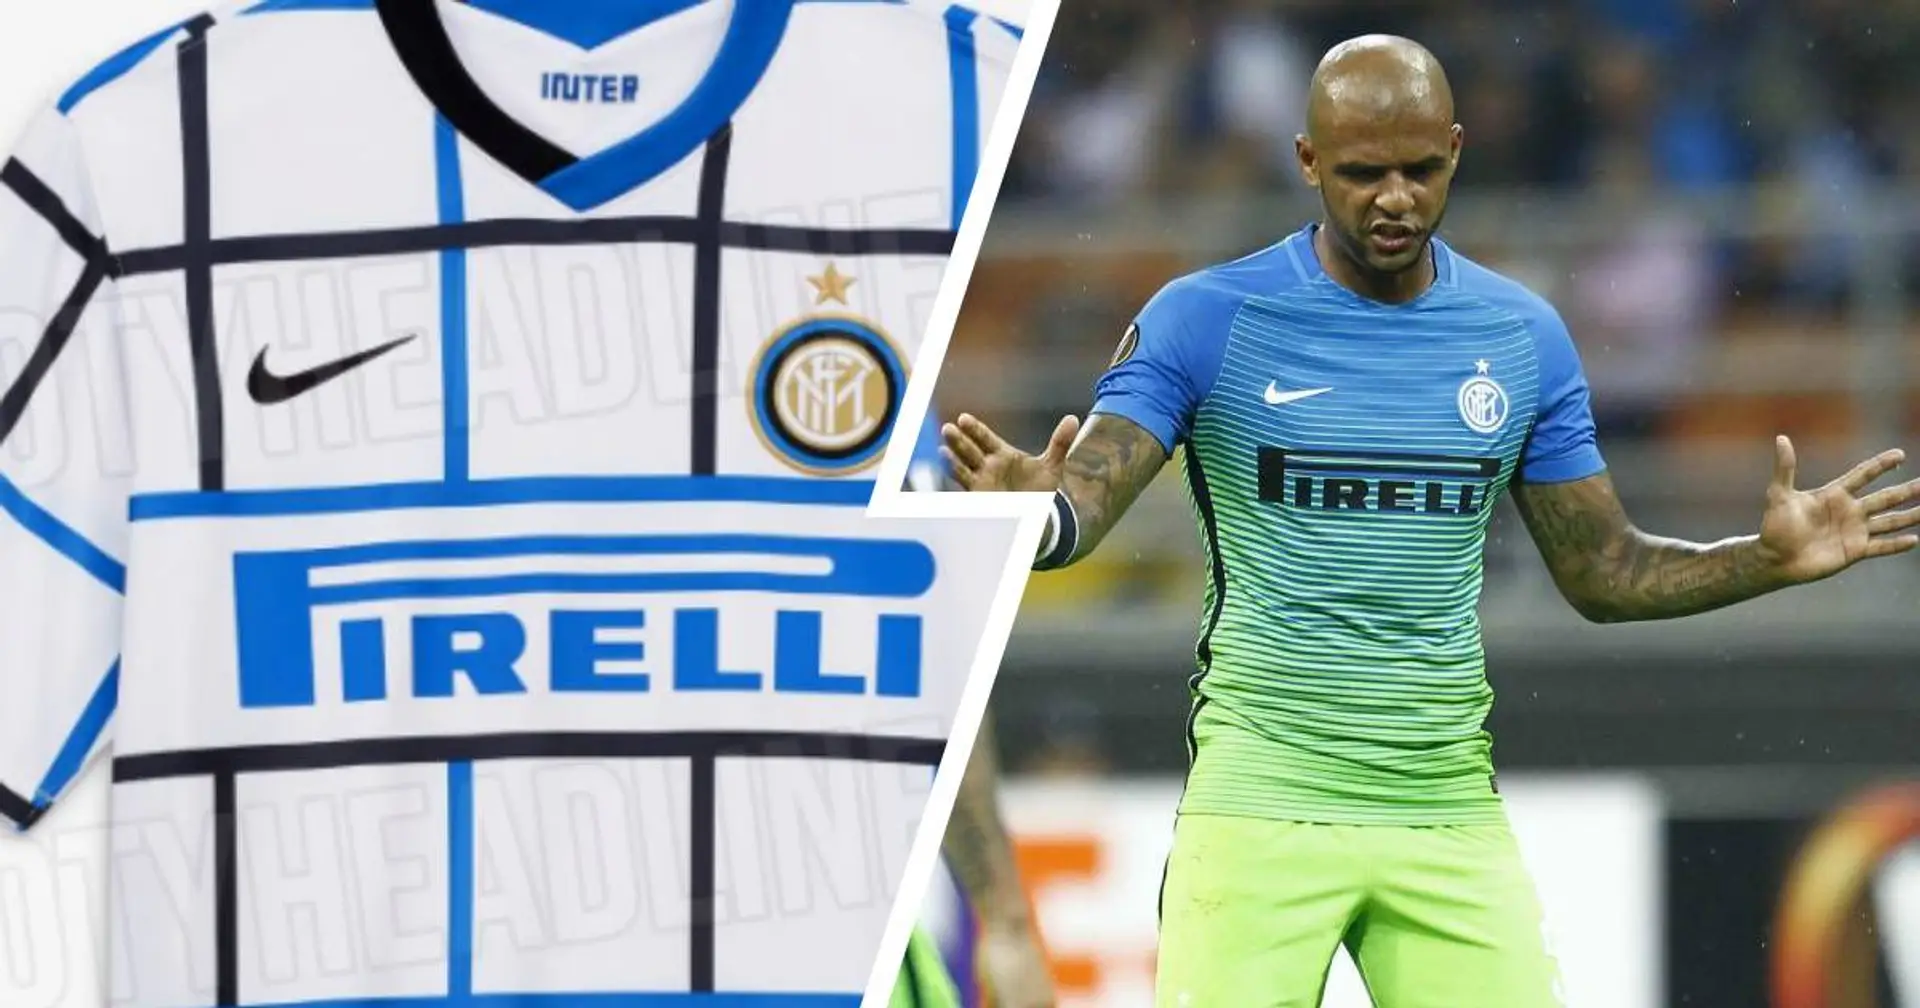 La maglia "tovaglia" fa storcere il naso ai tifosi dell'Inter? Non è la prima volta che accade: ci sono altri 4 "precedenti illustri"